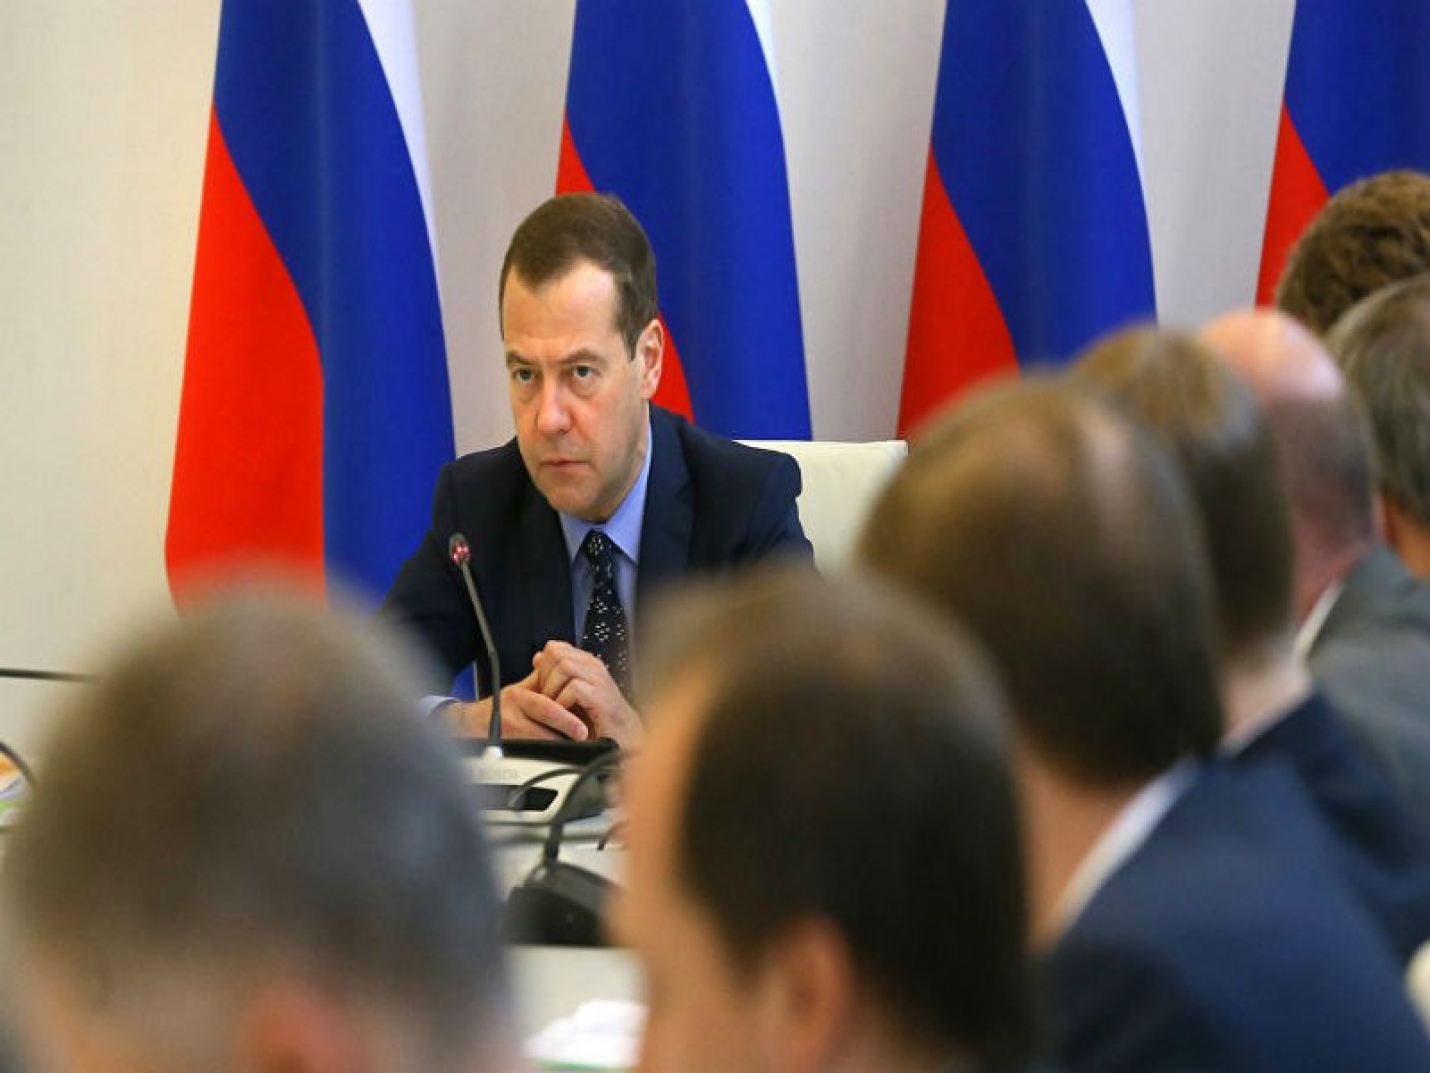 Онлайн-совещание, посвященное завершению праймериз ЕР, проведет Медведев